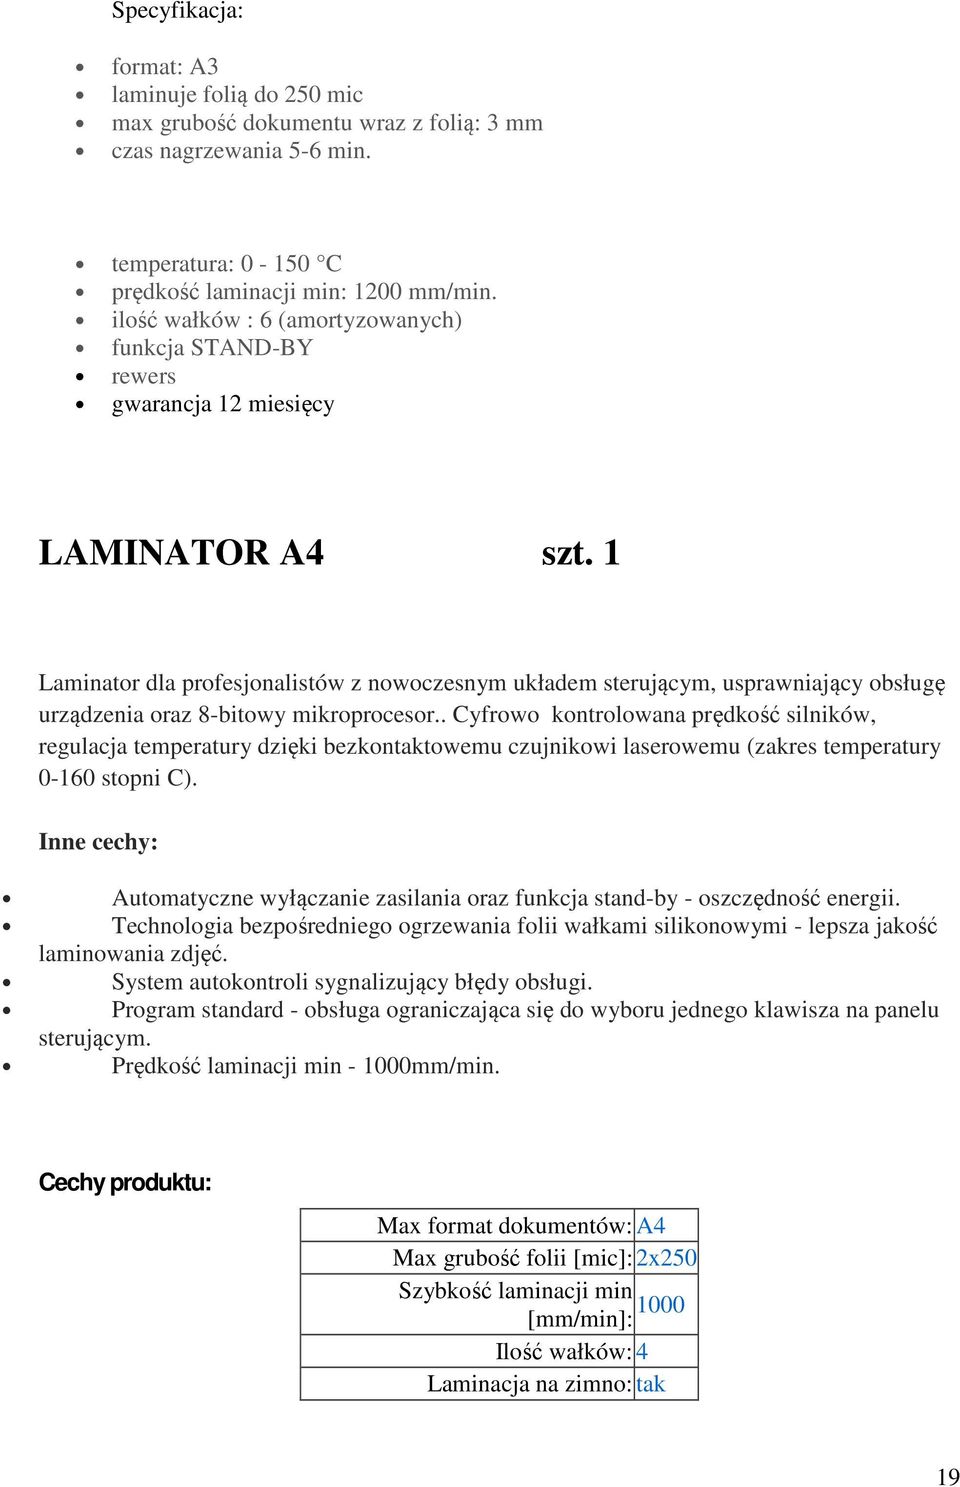 1 Laminator dla profesjonalistów z nowoczesnym układem sterującym, usprawniający obsługę urządzenia oraz 8-bitowy mikroprocesor.